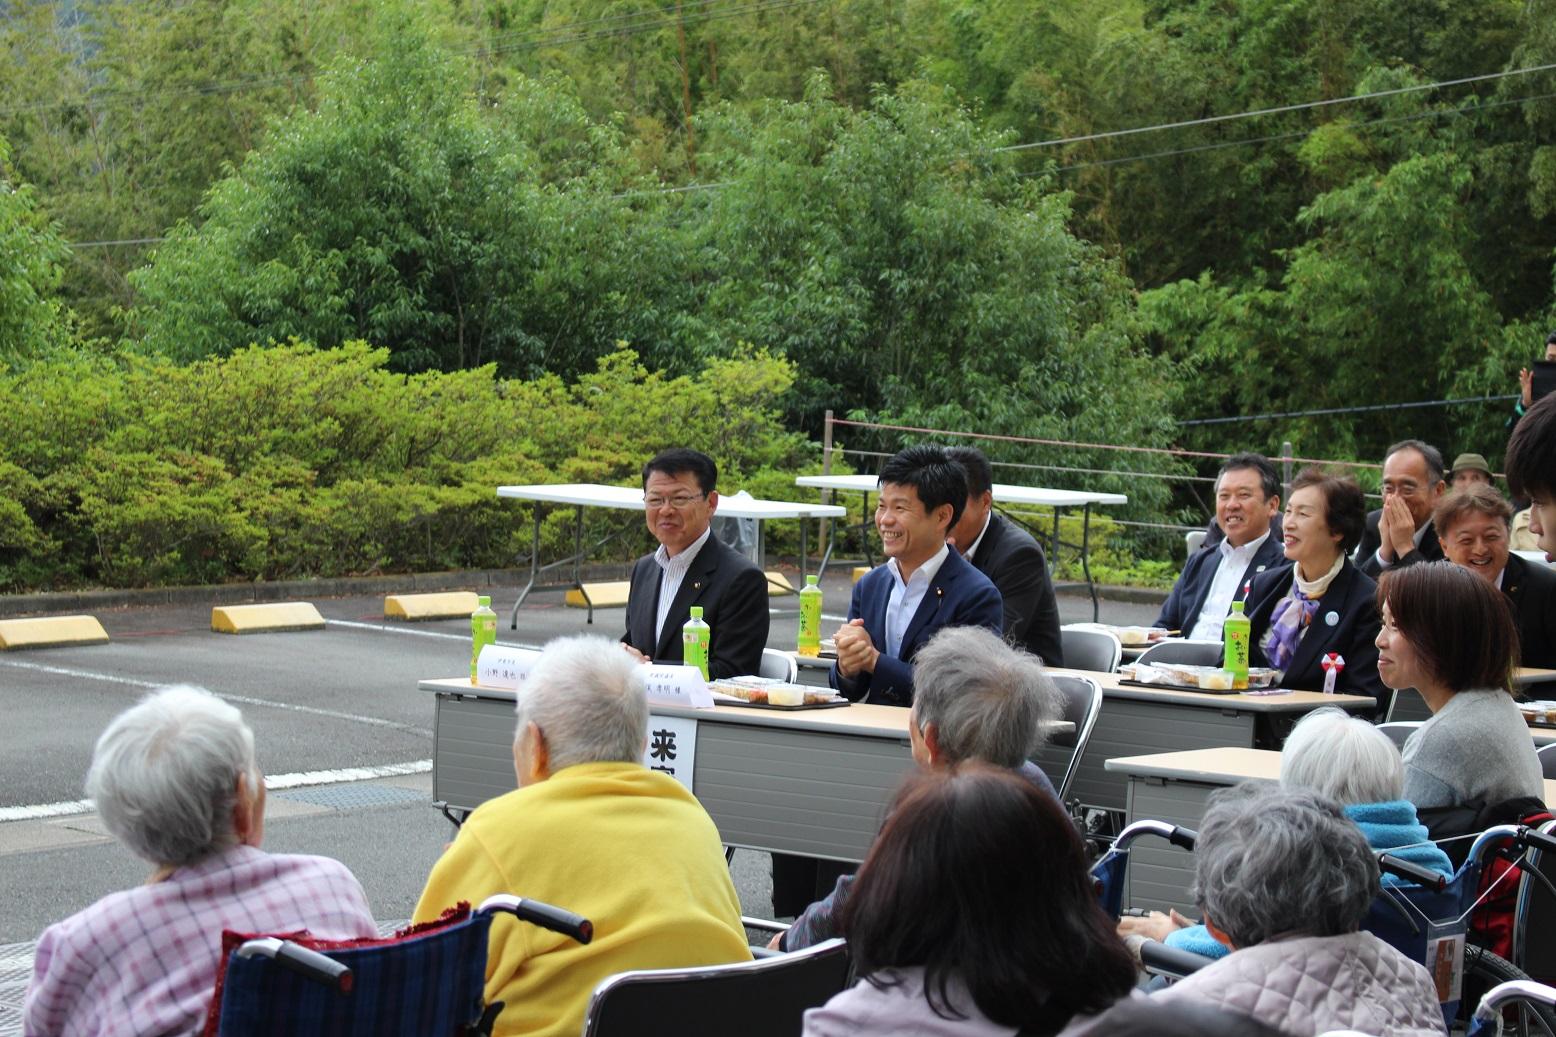 「特別養護老人ホームうさみの園」にて開催された「うさみの園まつり」に出席した伊東市長の写真